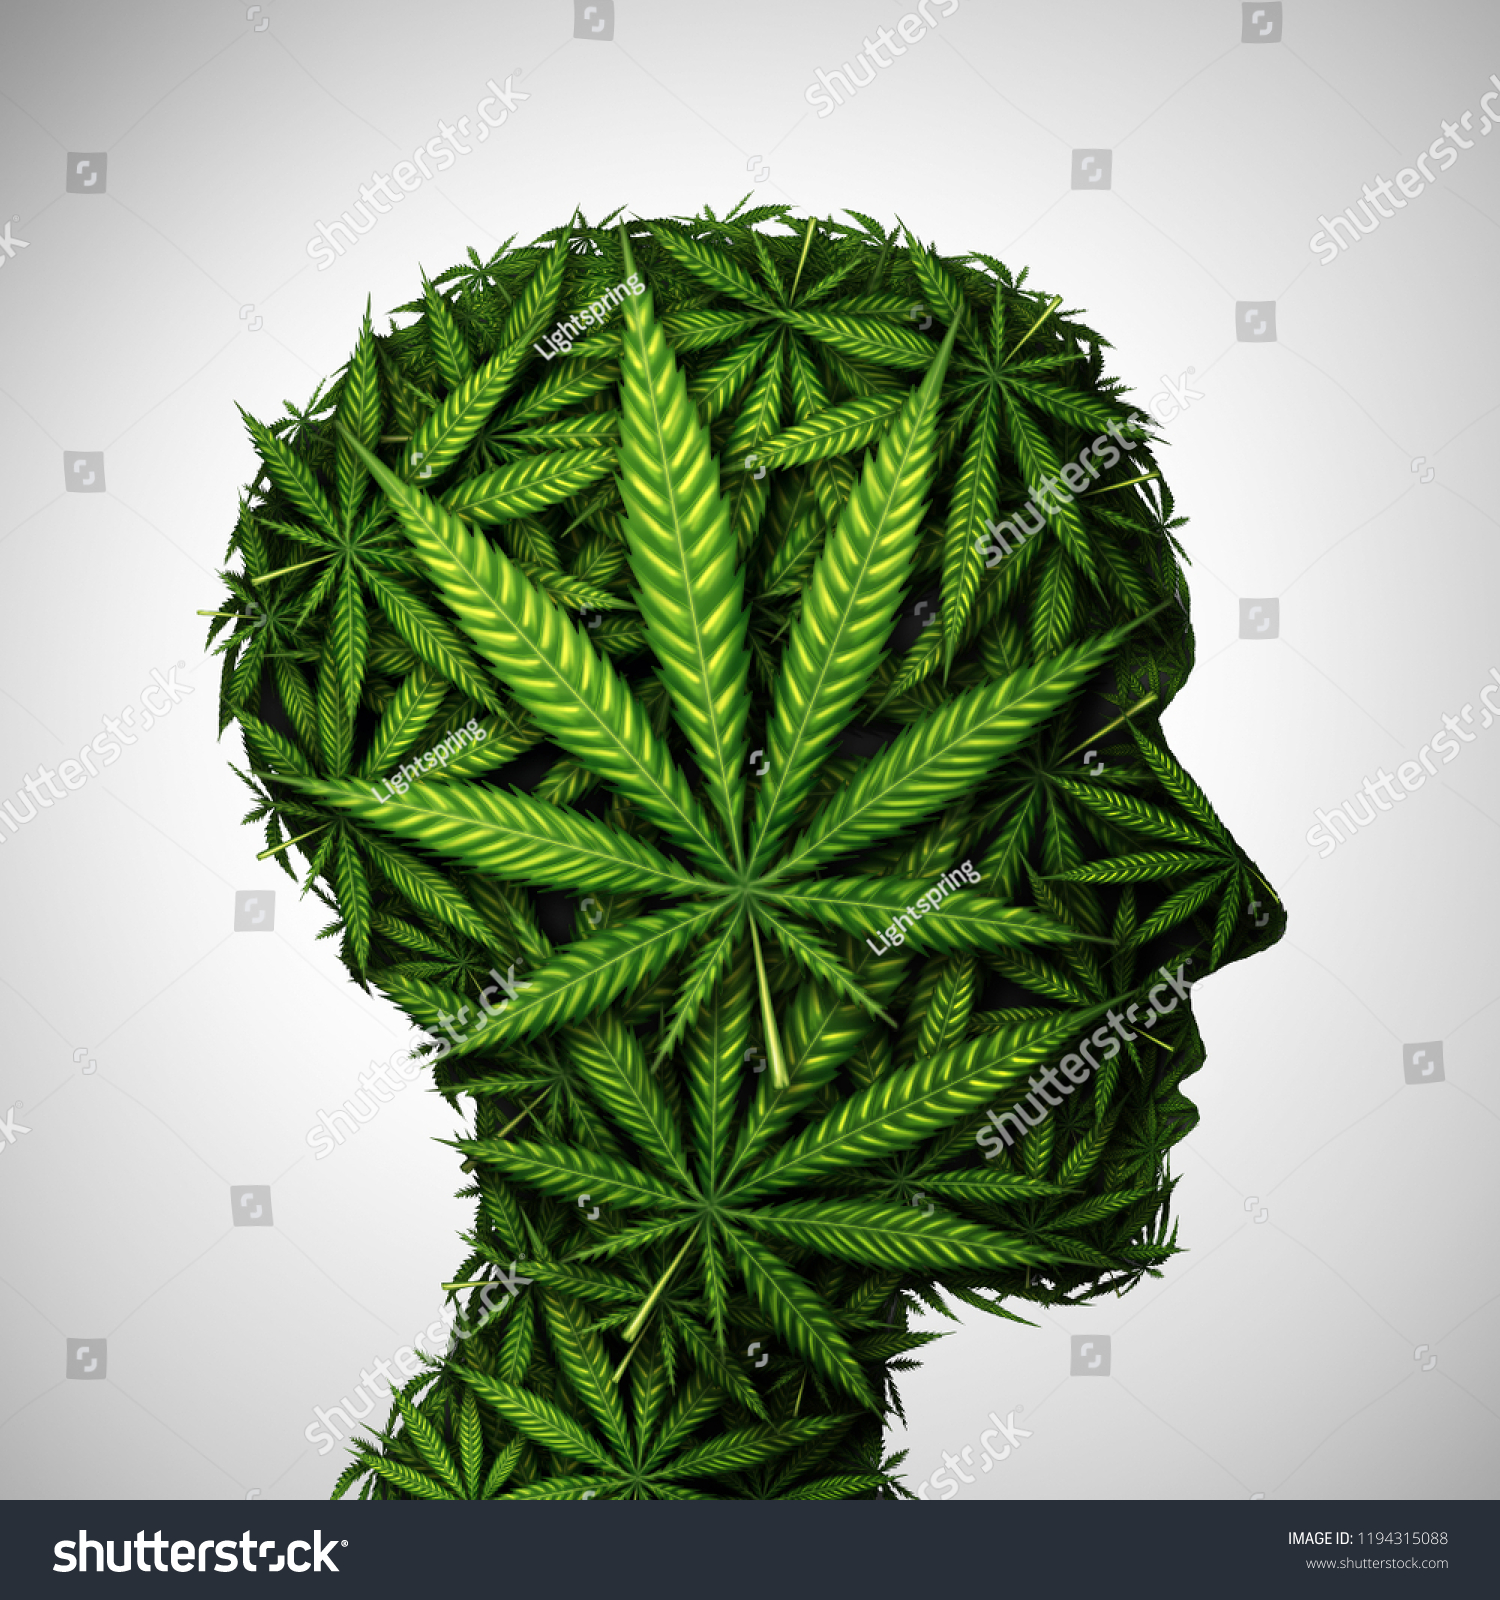 Картинки марихуана в 3d фото головок марихуаны